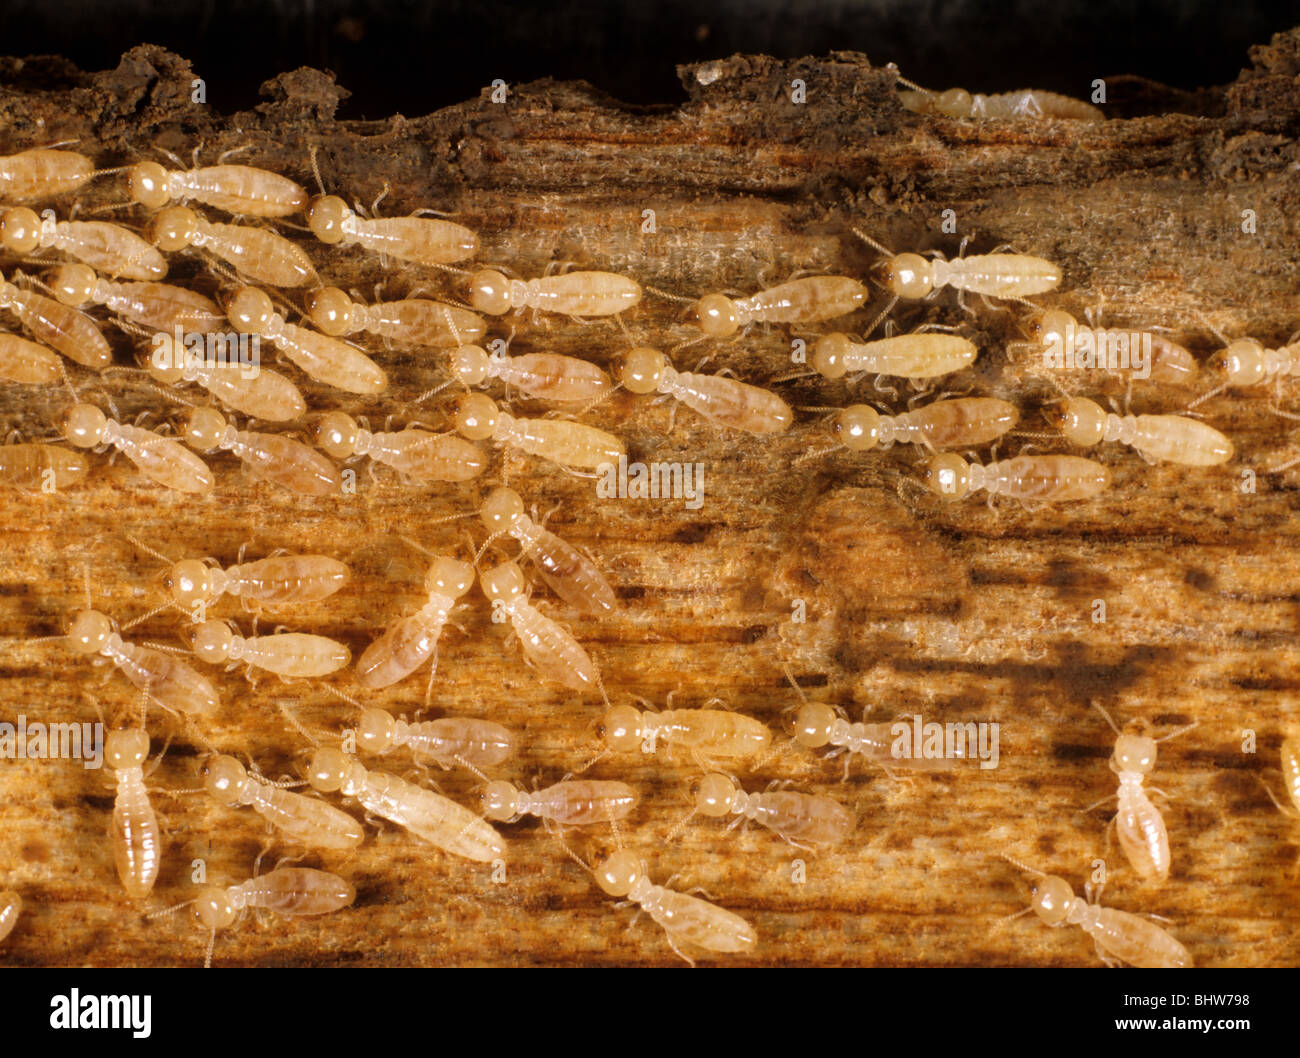 Les termites (Reticulitermes sp.) le bois endommagé Banque D'Images